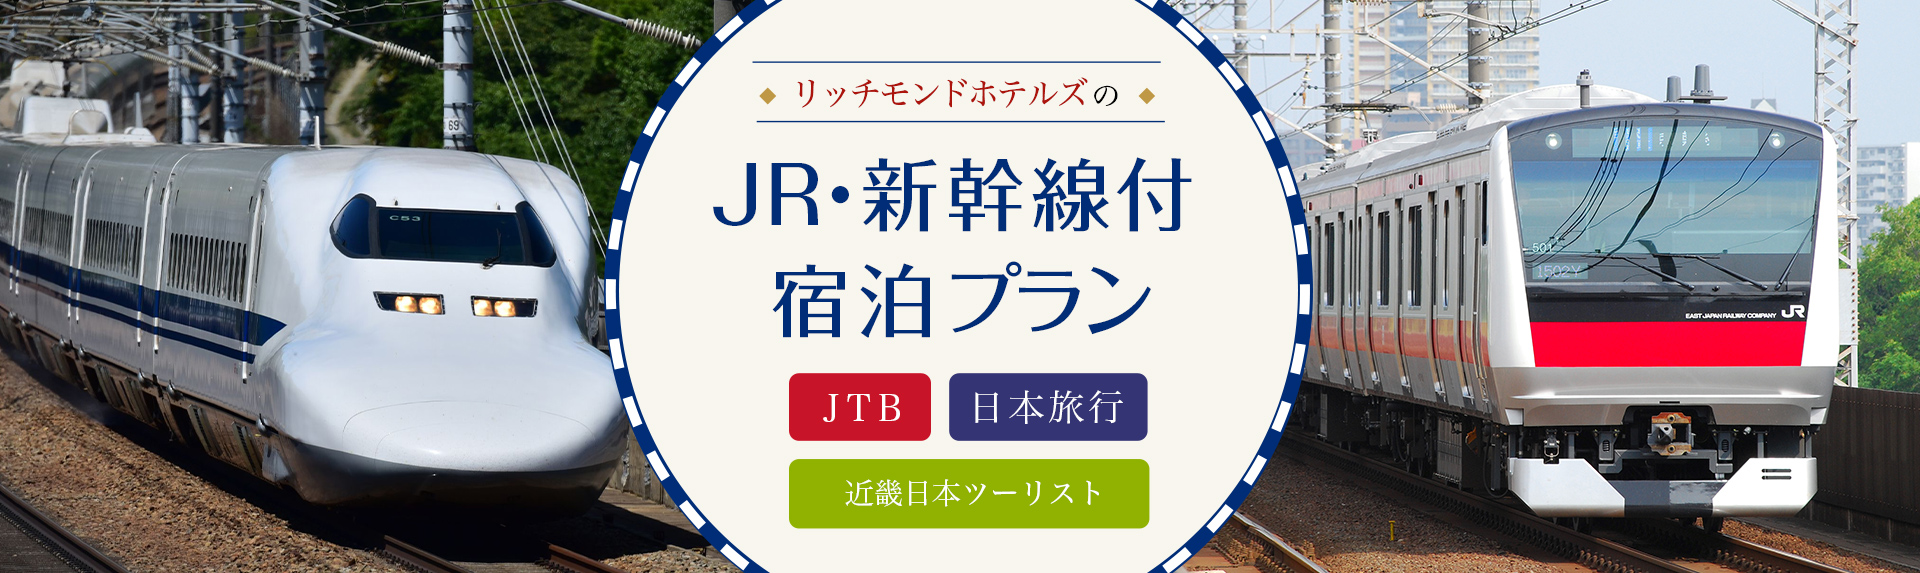 JR・新幹線付き宿泊プラン